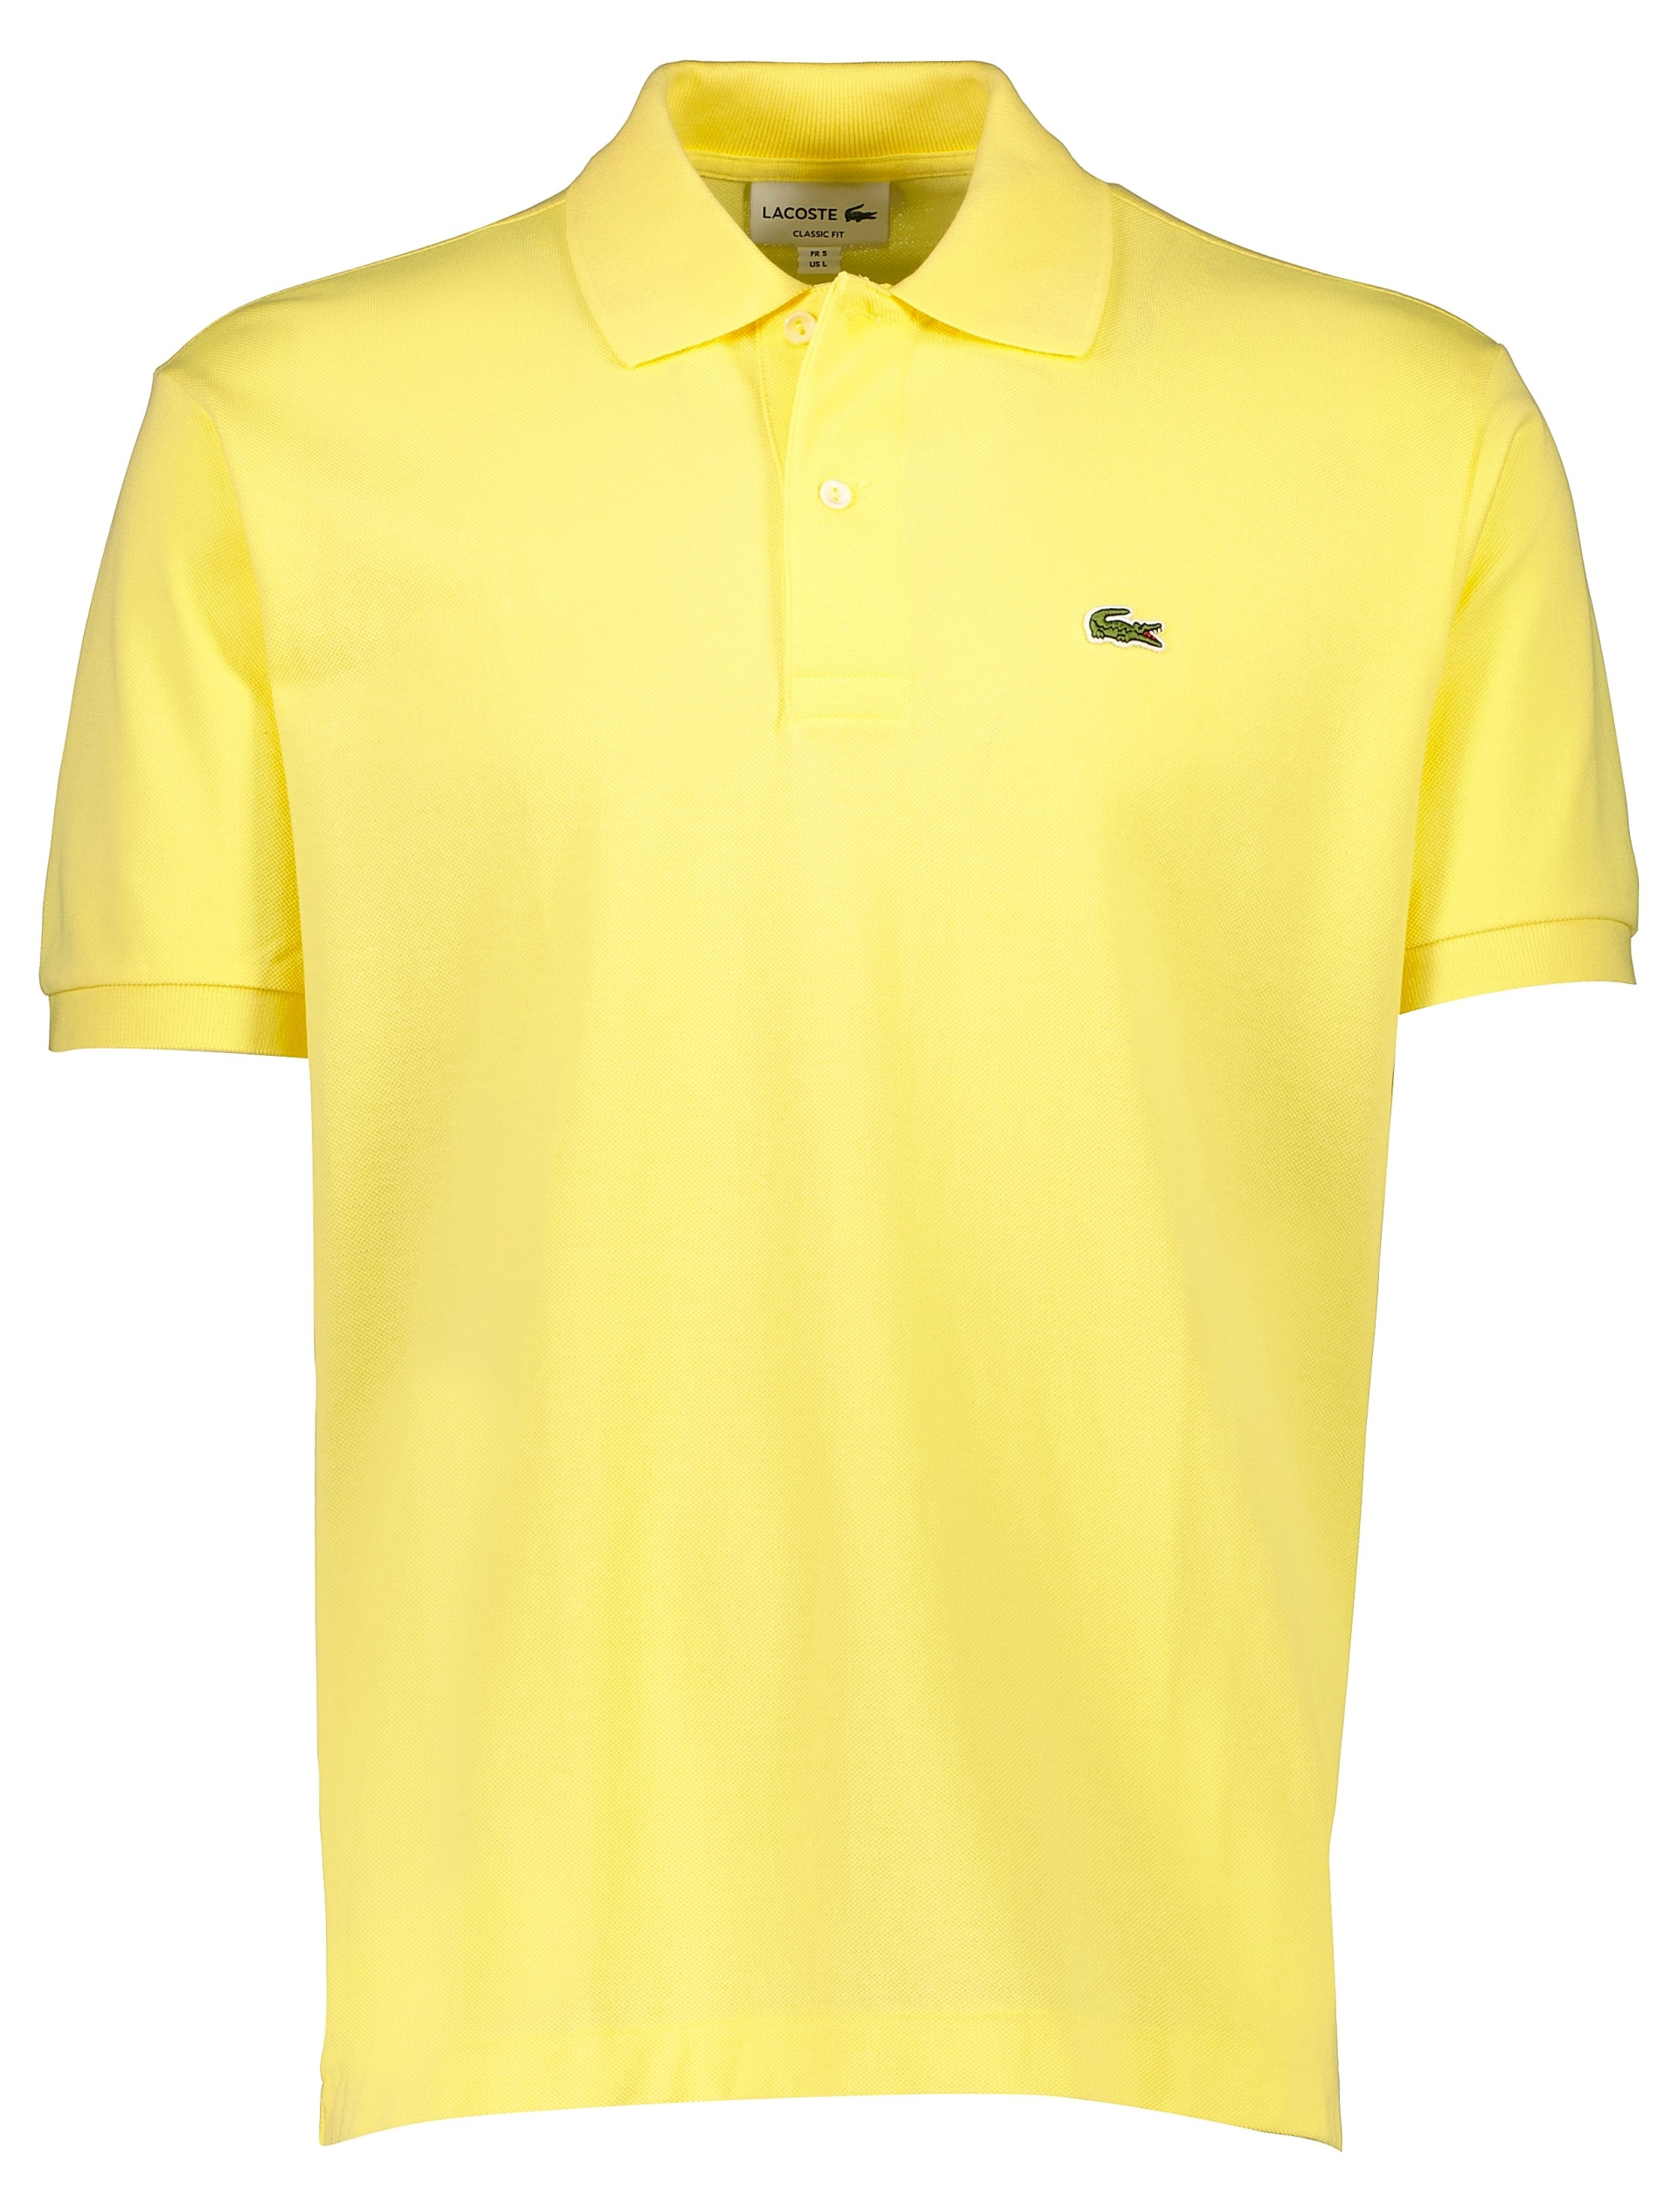 Lacoste Poloshirt gul / 107 yellow